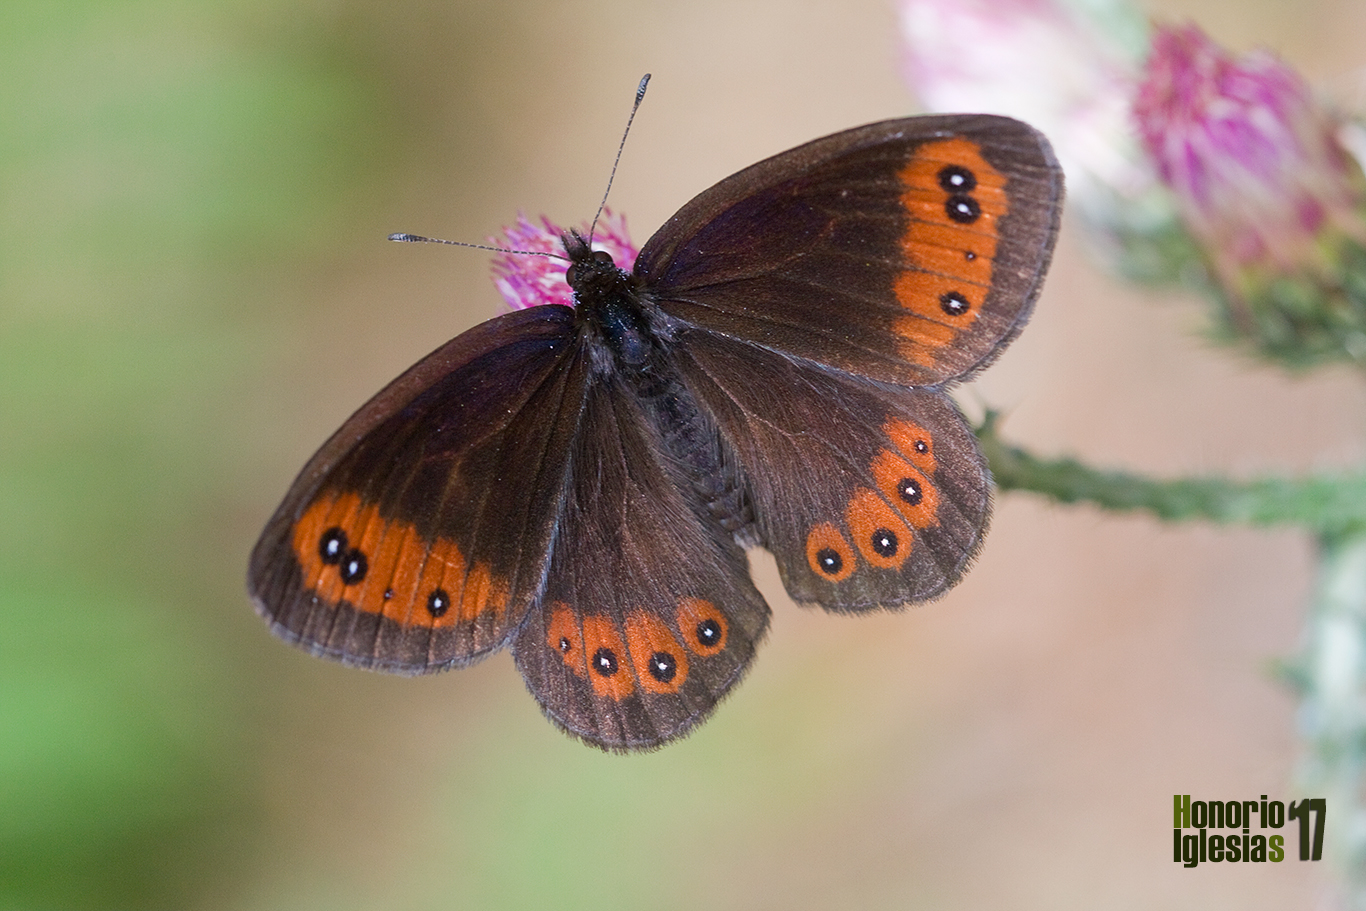 Anverso de la mariposa erebia común o montañesa de banda larga (Erebia meolans). La melanina confiere los colores oscuros (marrones, negros y grises) de las escamas de los lepidópteros.